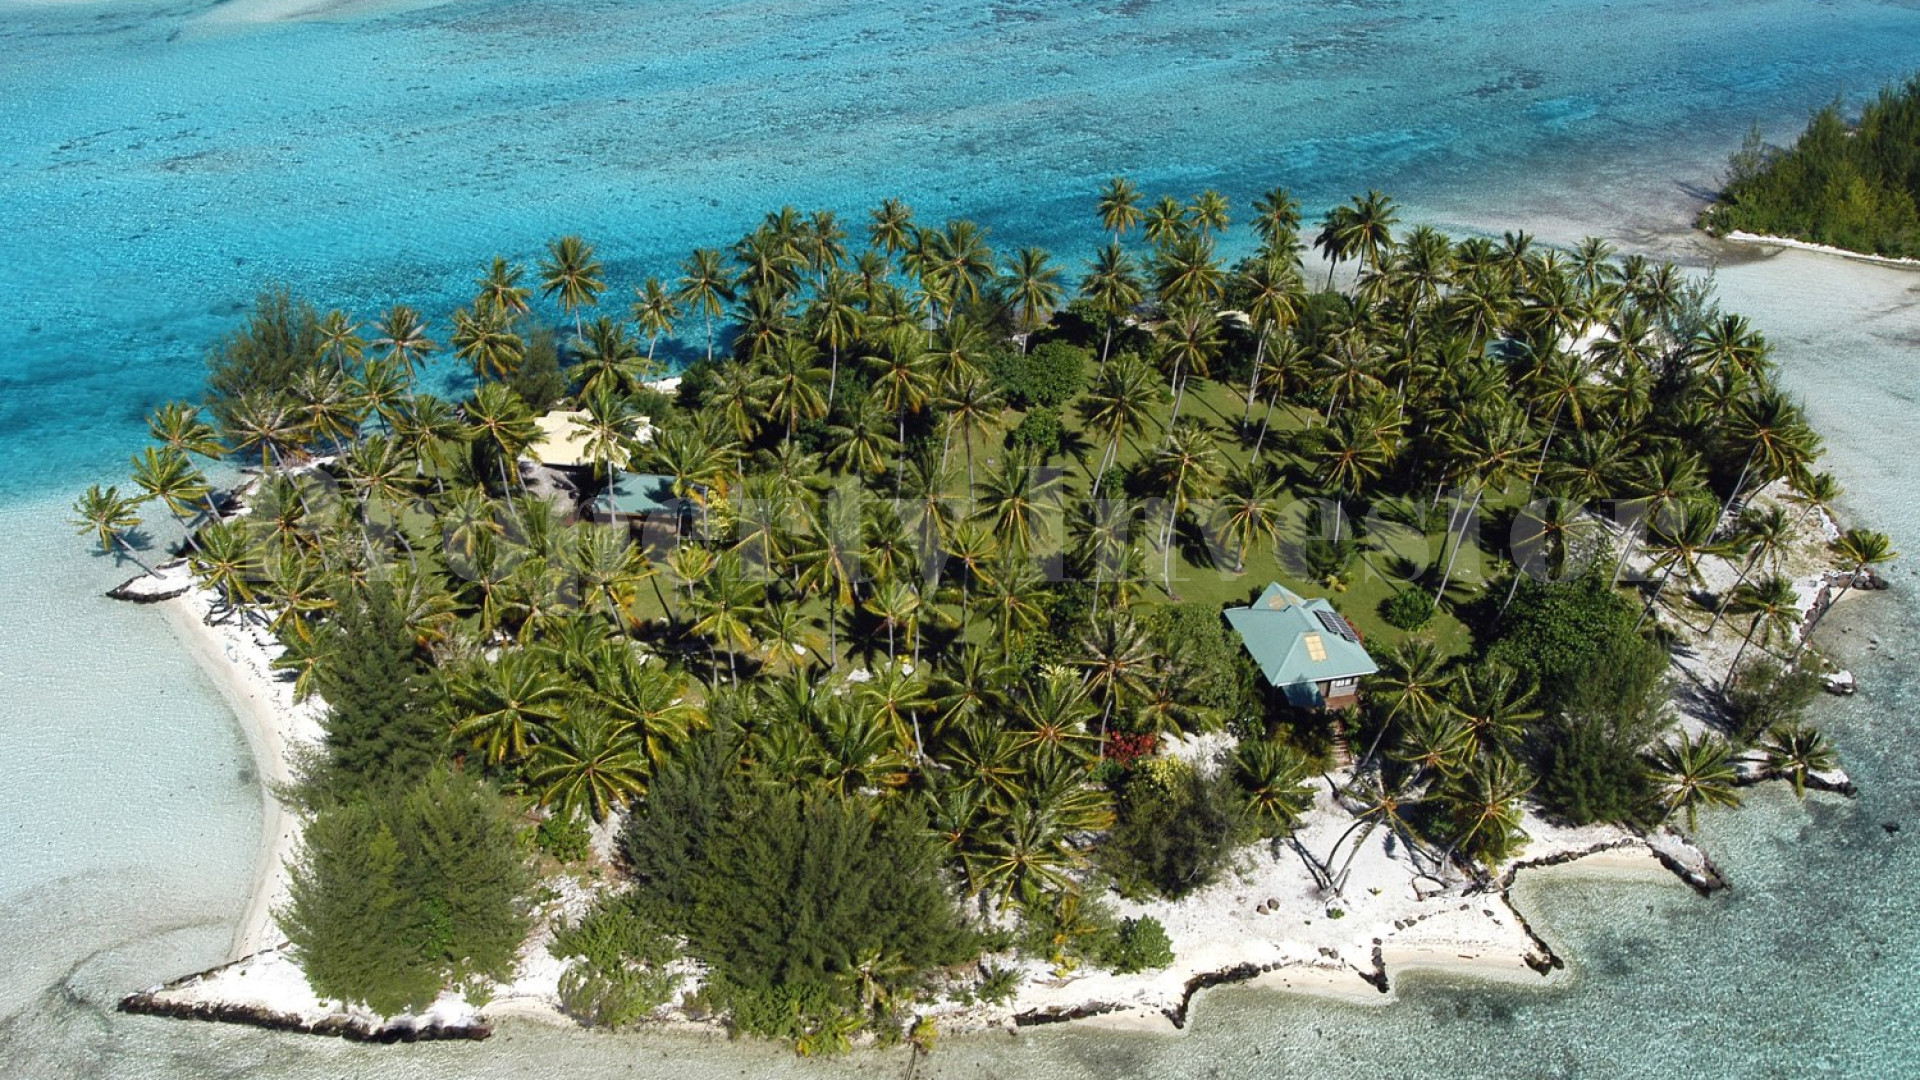 Продается частный остров мечты с резиденцией и невероятным видом на Бора-Бора